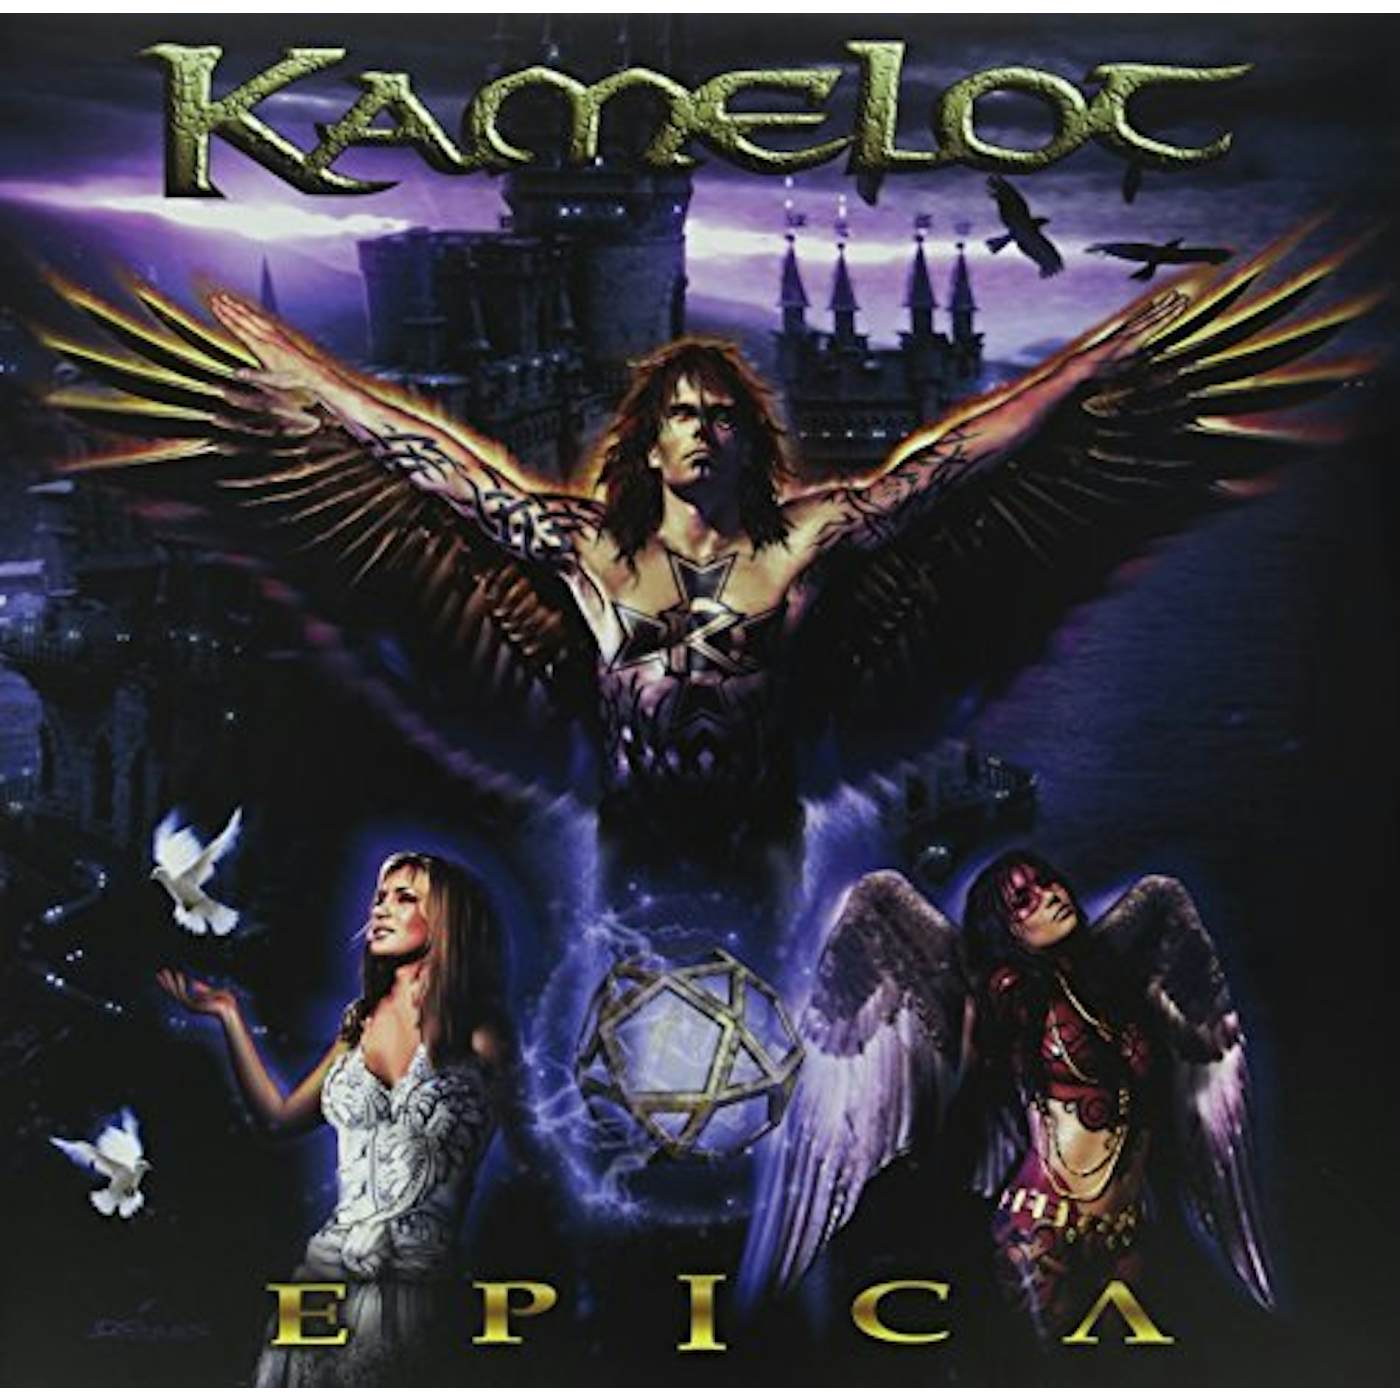 Kamelot Epica Vinyl Record